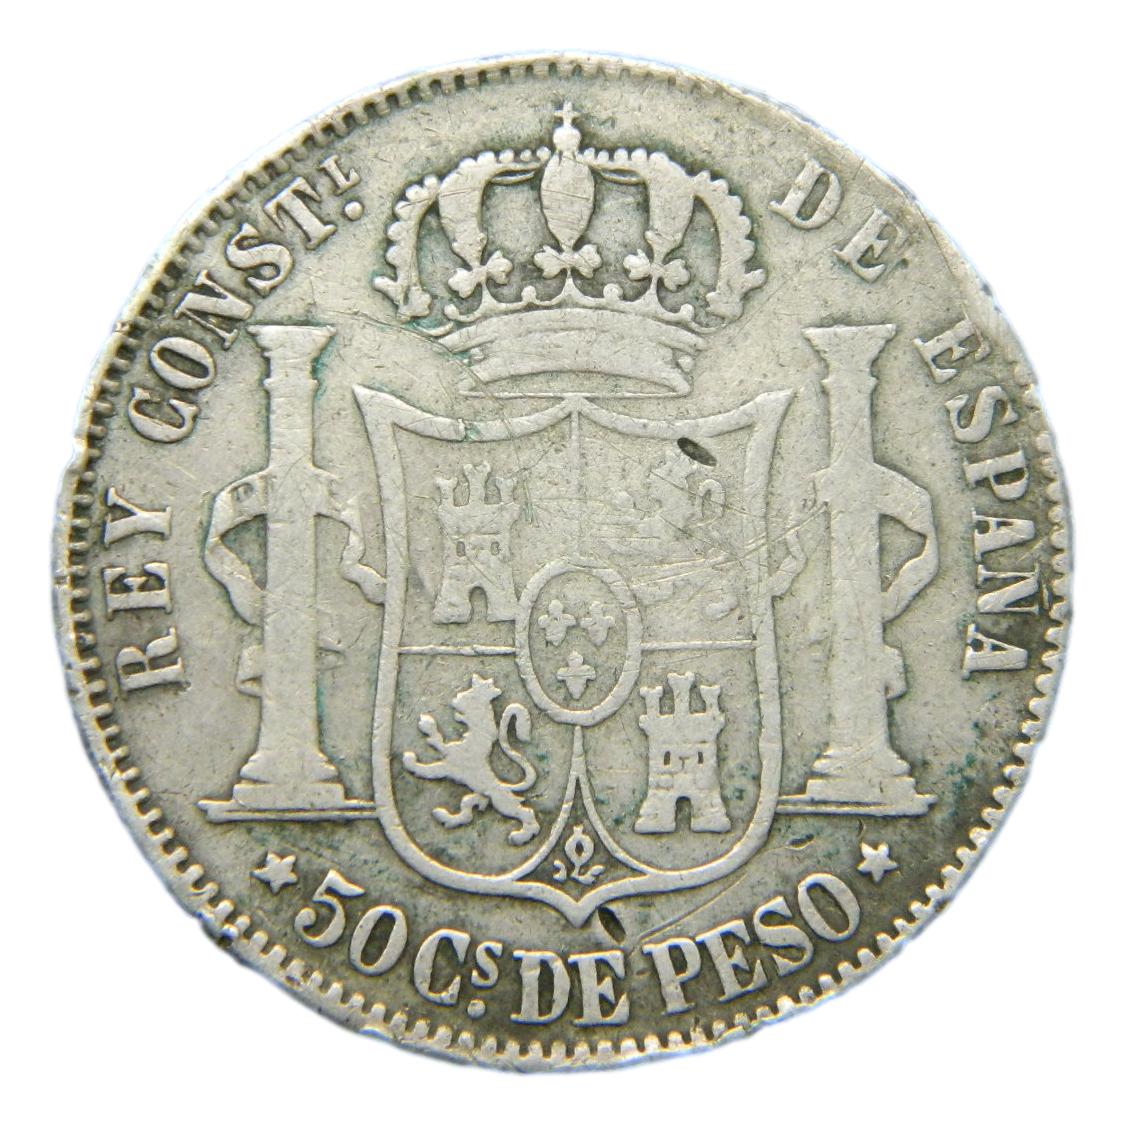 1884 - ALFONSO XII - 50 CENTAVOS DE PESO - MANILA